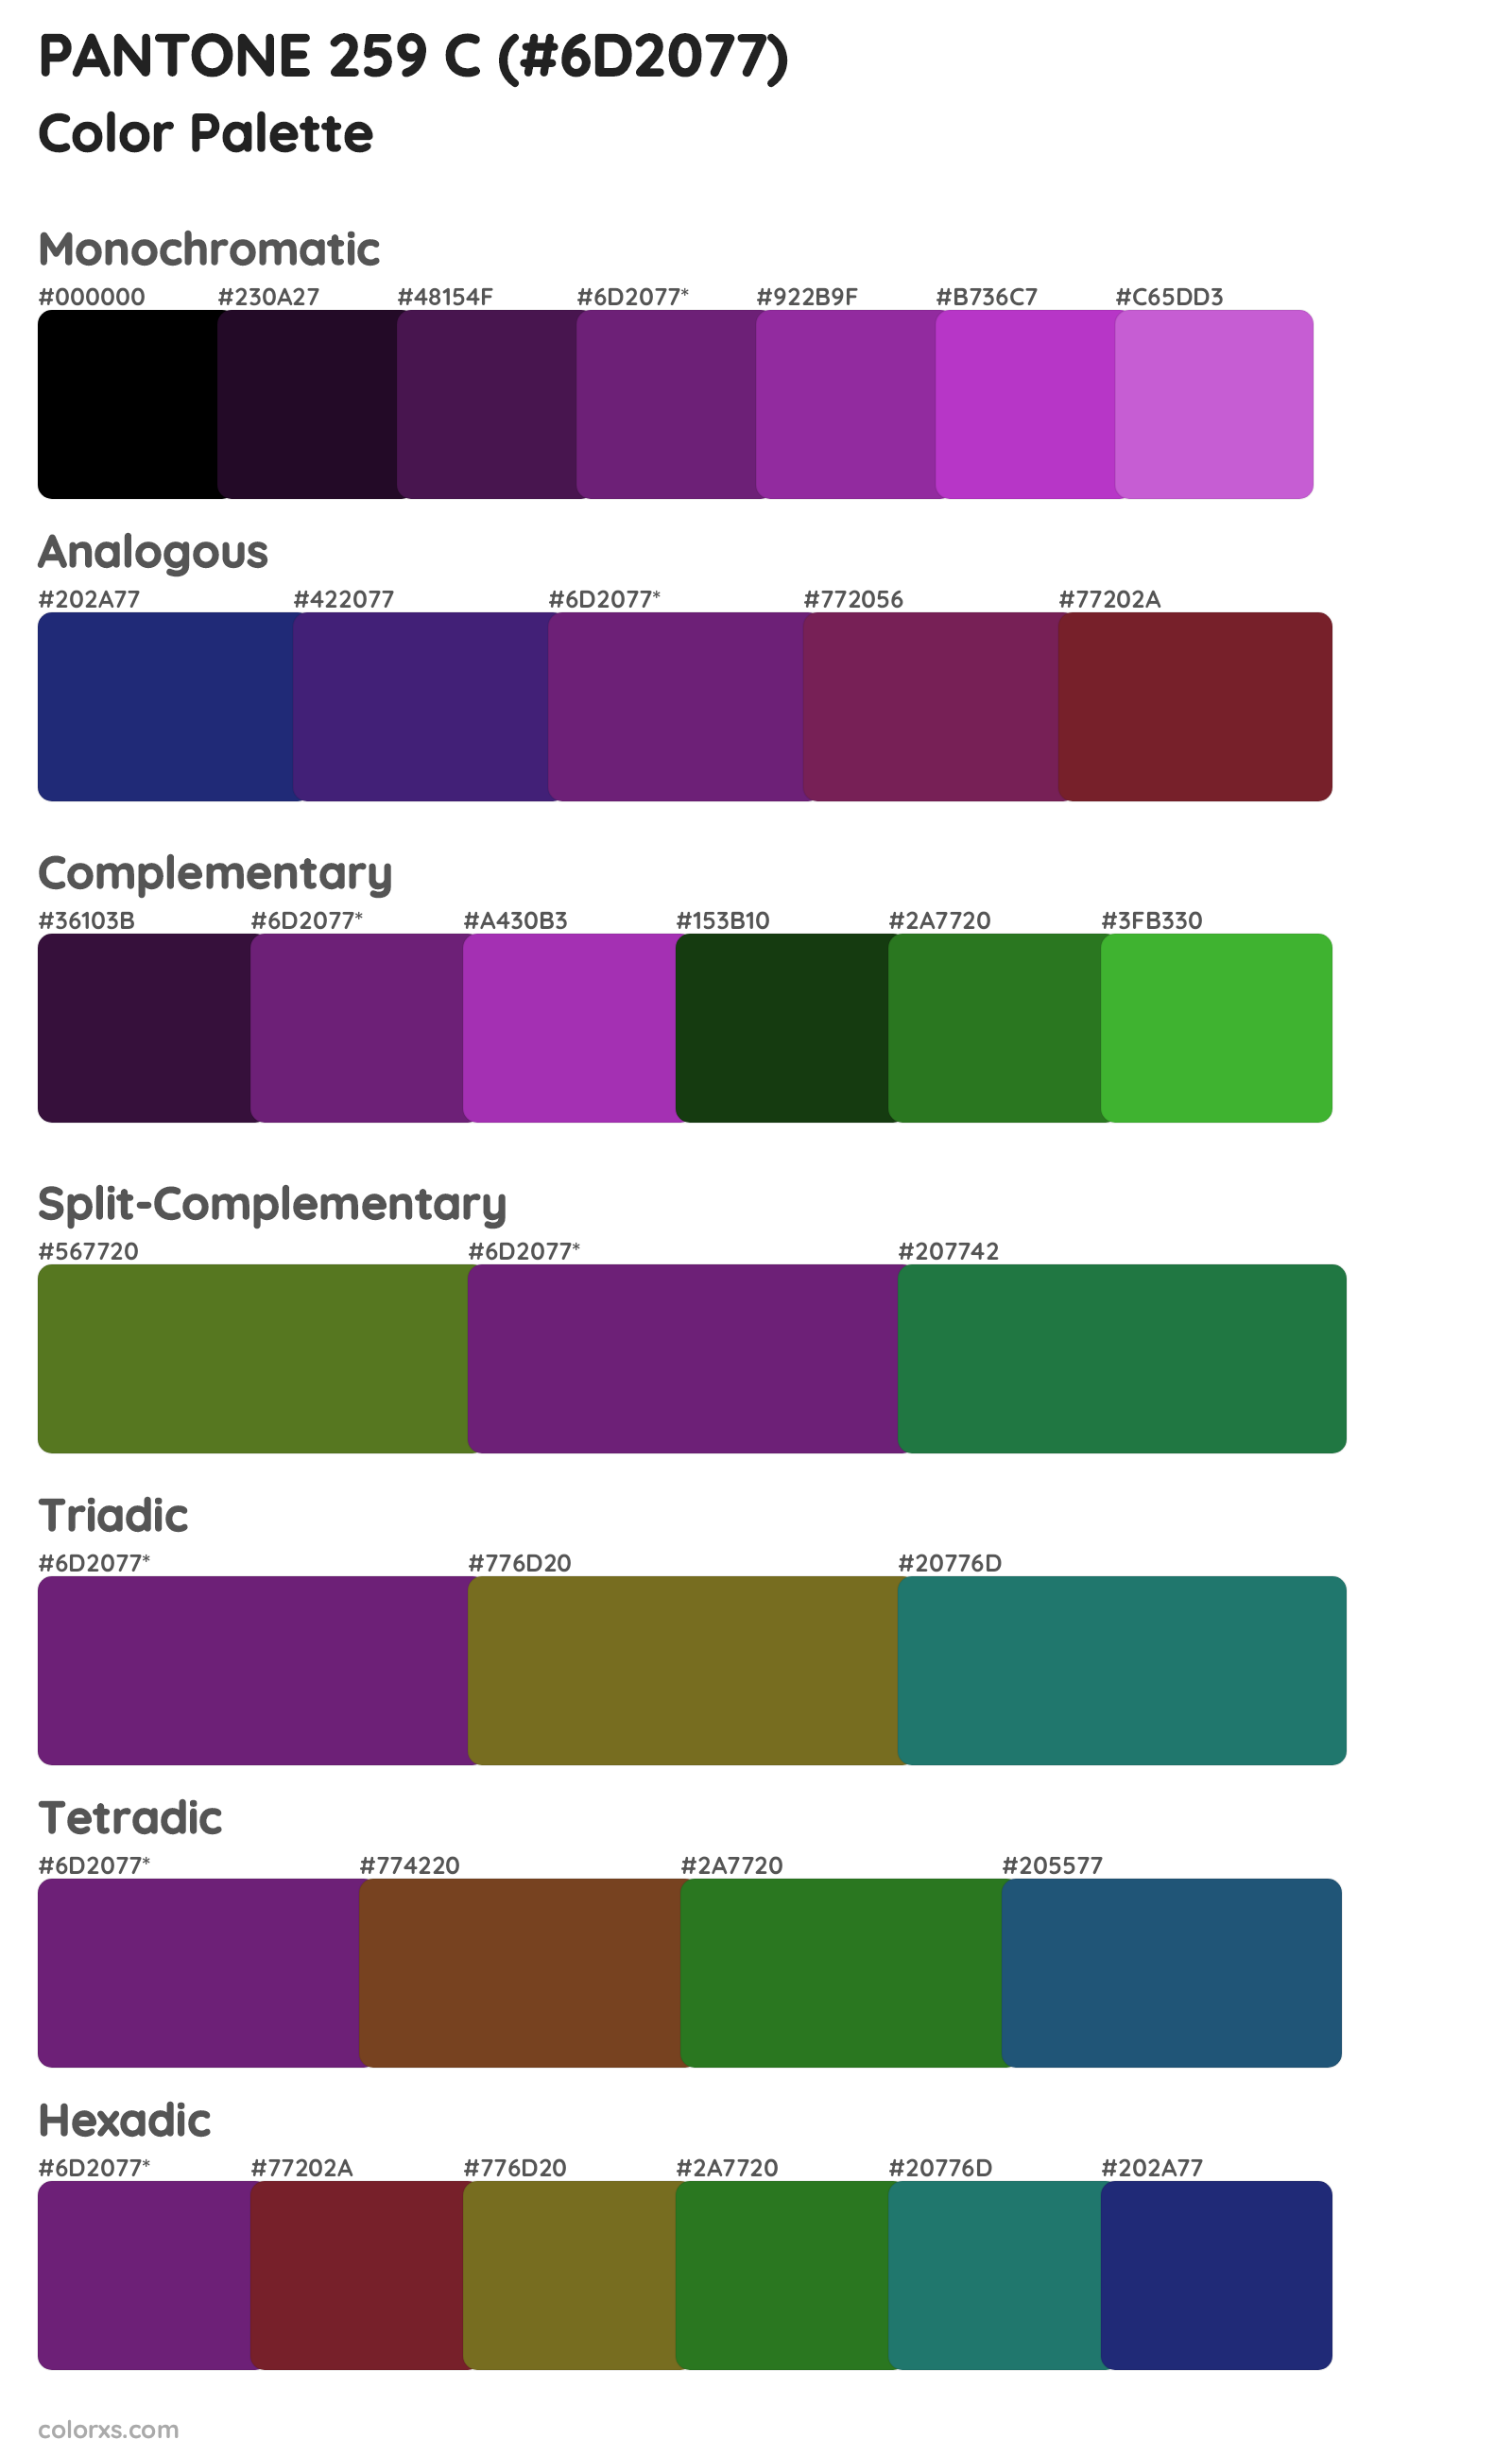 PANTONE 259 C Color Scheme Palettes